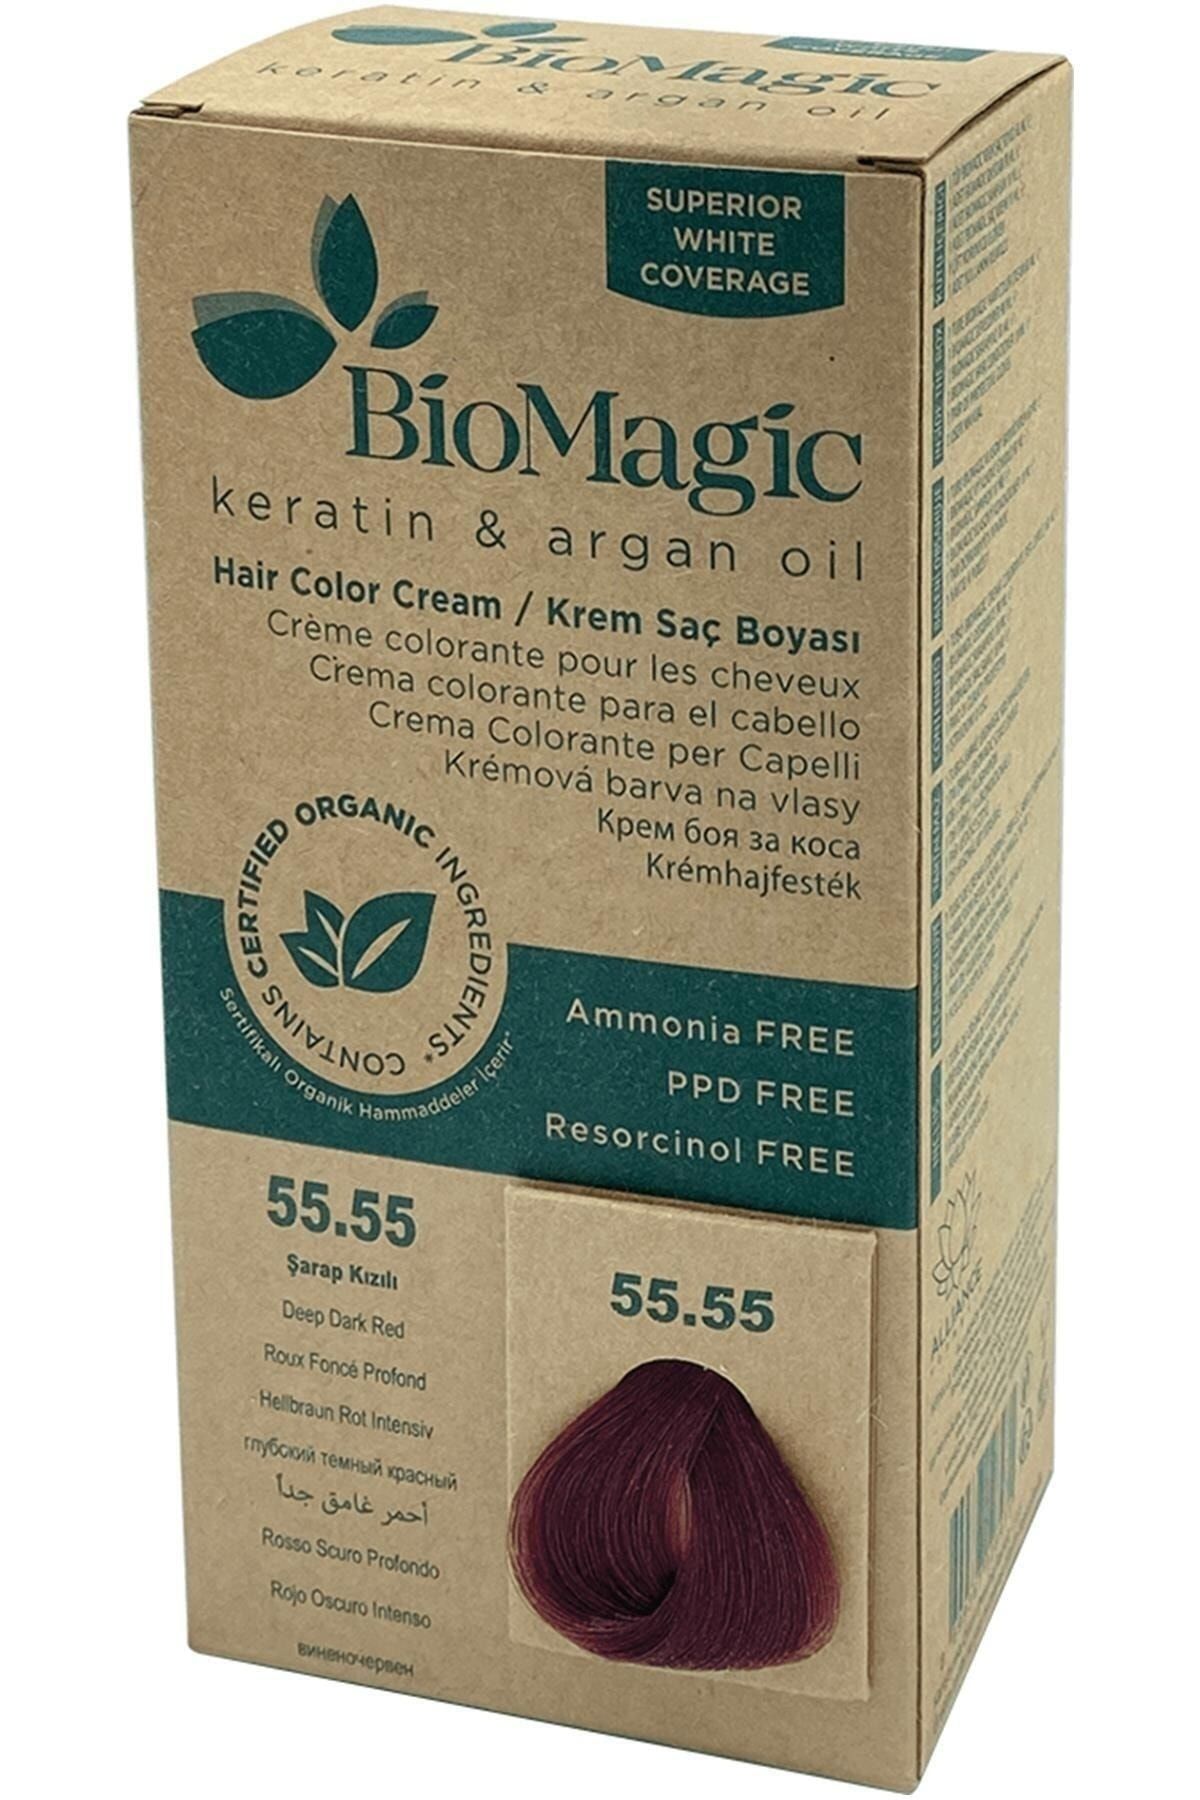 BioMagic Saç Boyası Şarap Kızılı No: 55.55